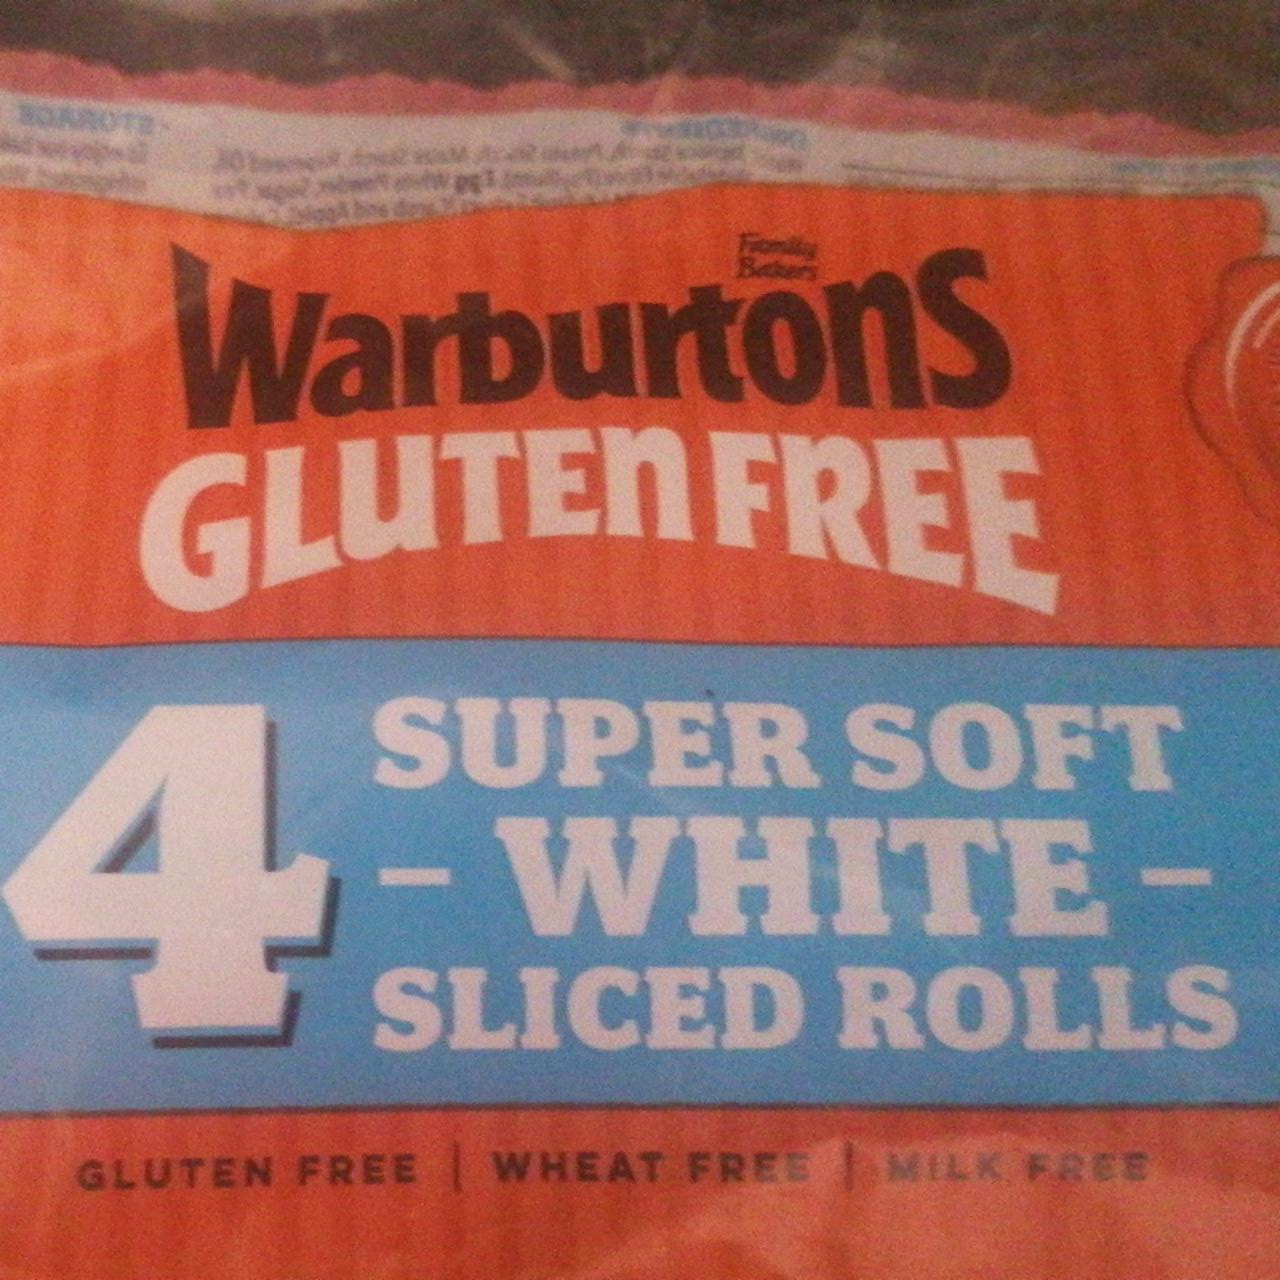 Fotografie - Gluten free 4 super soft white sliced rolls Warburtons